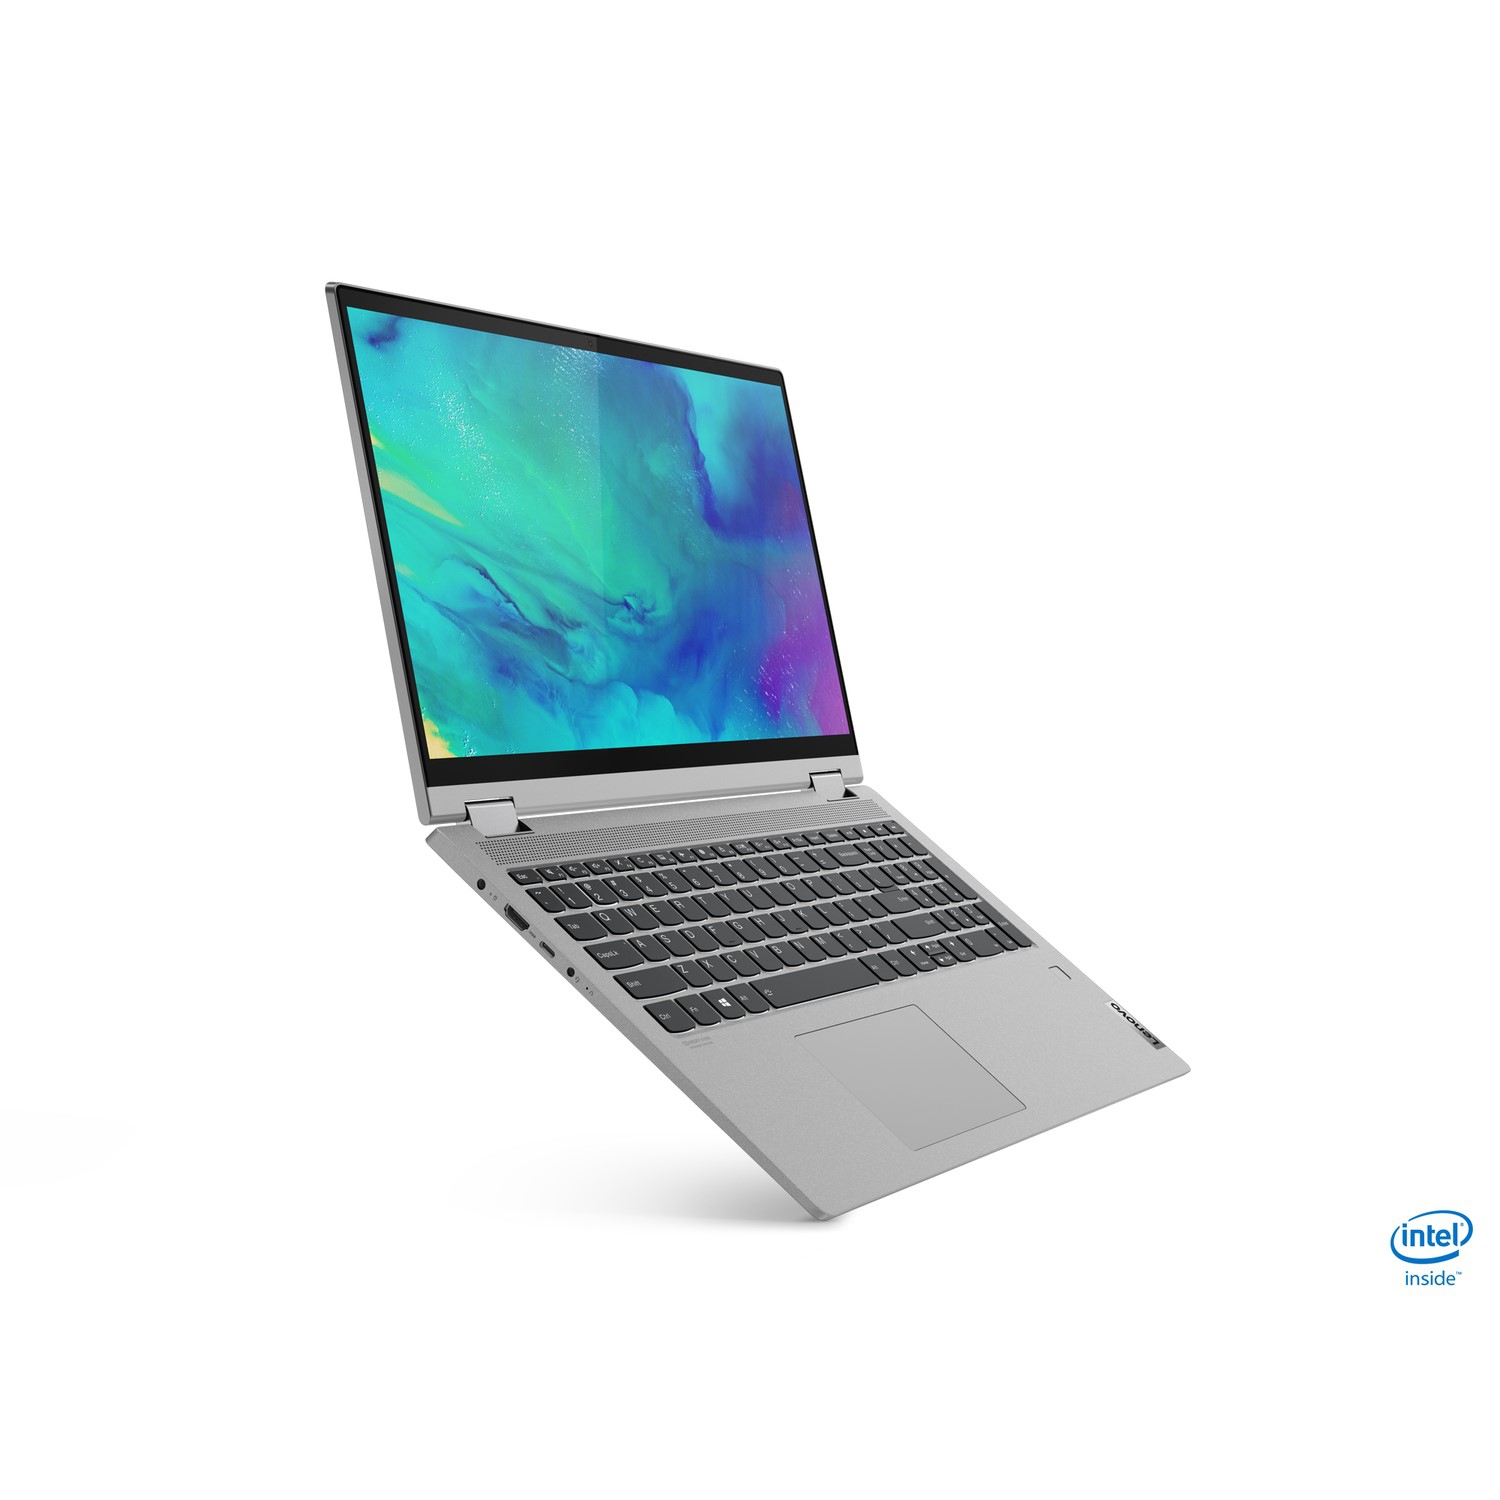 Refurbished (Excellent) - Lenovo IdeaPad Flex 5 Laptop (AMD Ryzen 5 5500U, 8GB Ram, 256GB SSD, HDMI, Webcam, Windows 11, 14" touchscreen) - Cloud Grey